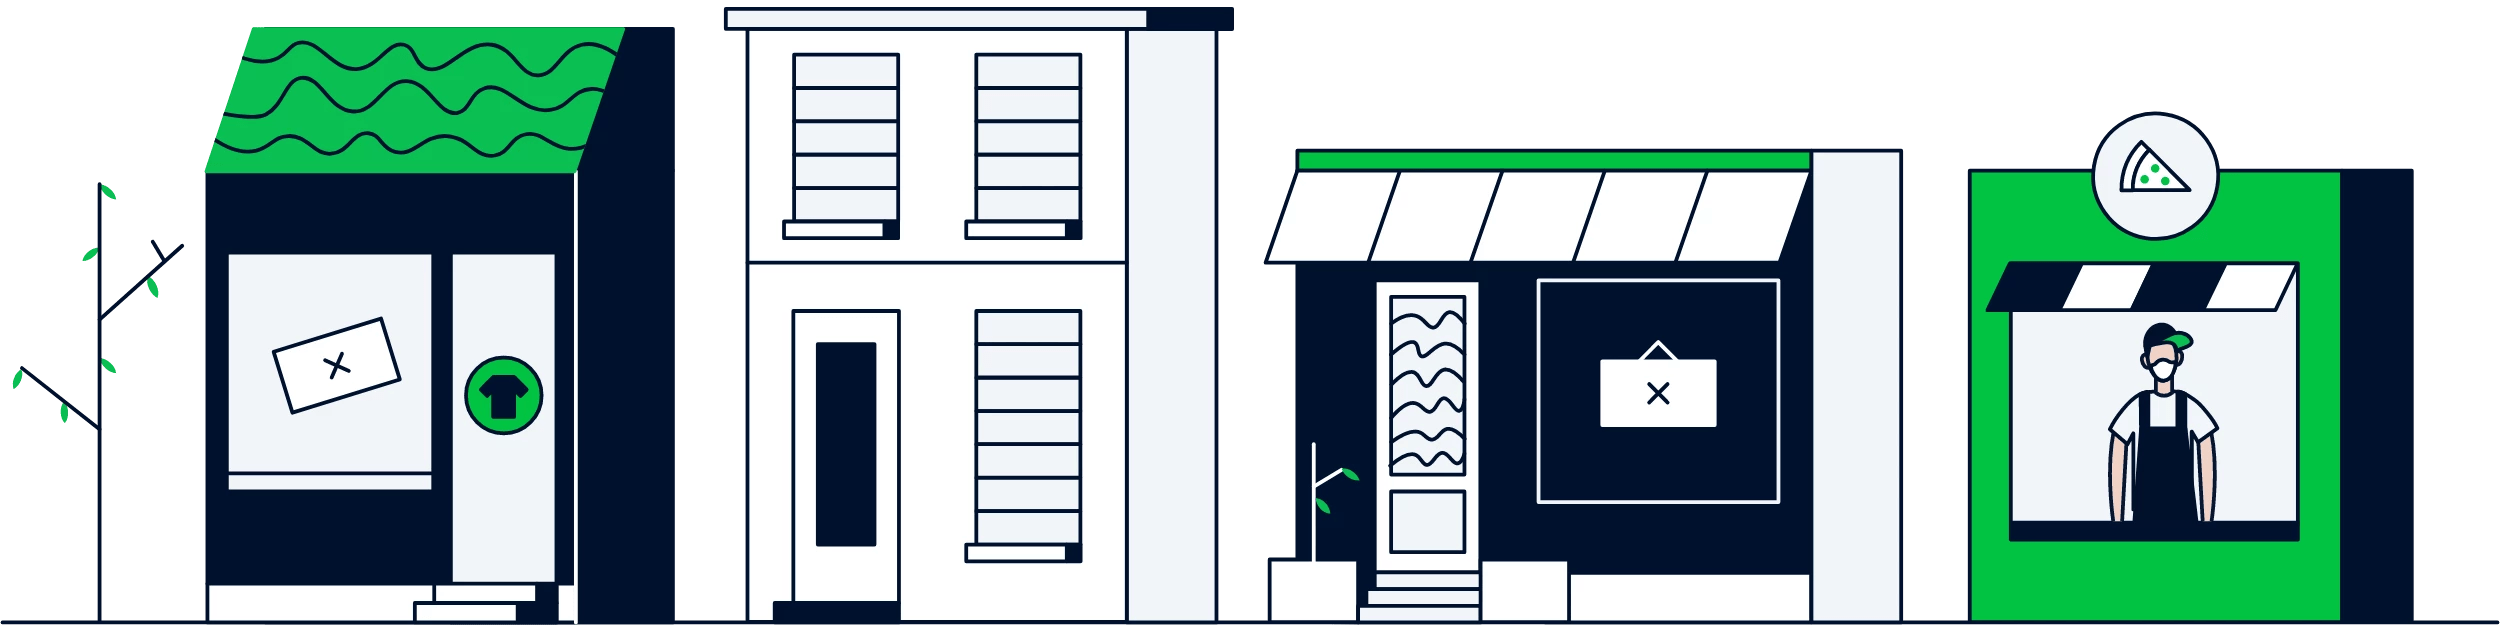 ilustracja zamkniętych sklepów